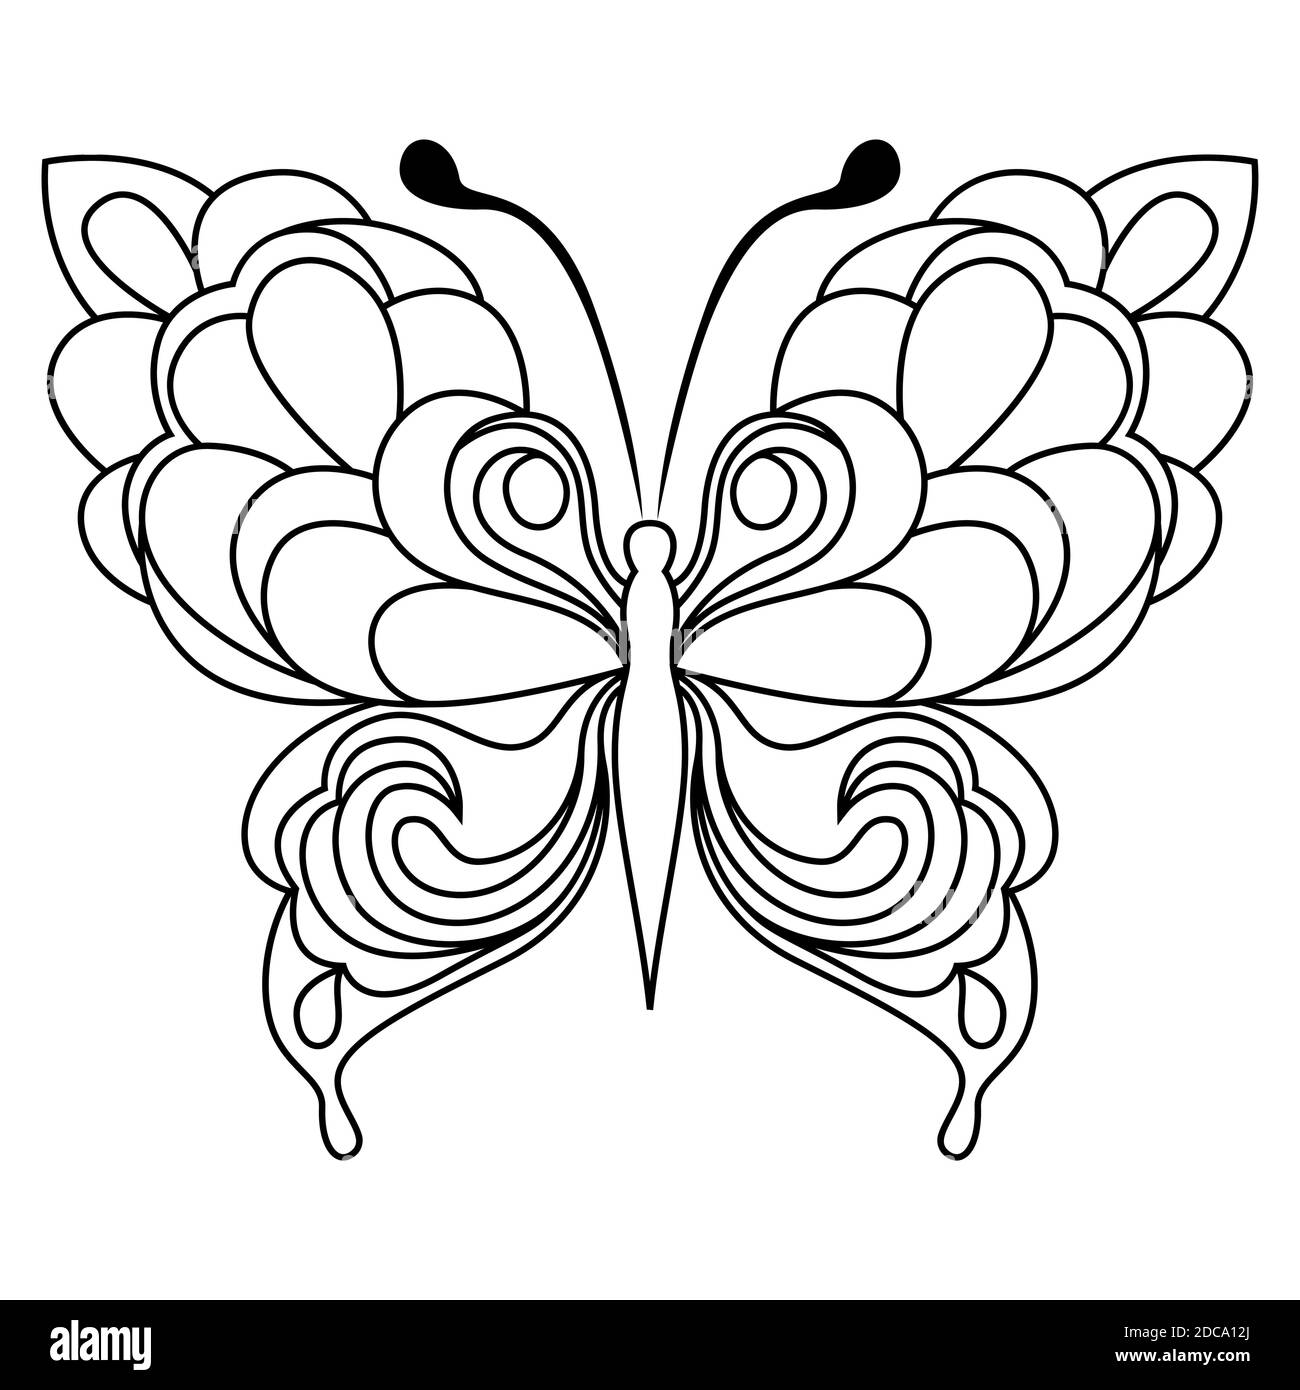 Schwarze Schablonen von schönen Schmetterling isoliert auf dem weißen Hintergrund, Handzeichnung Vektor-Illustration Stock Vektor